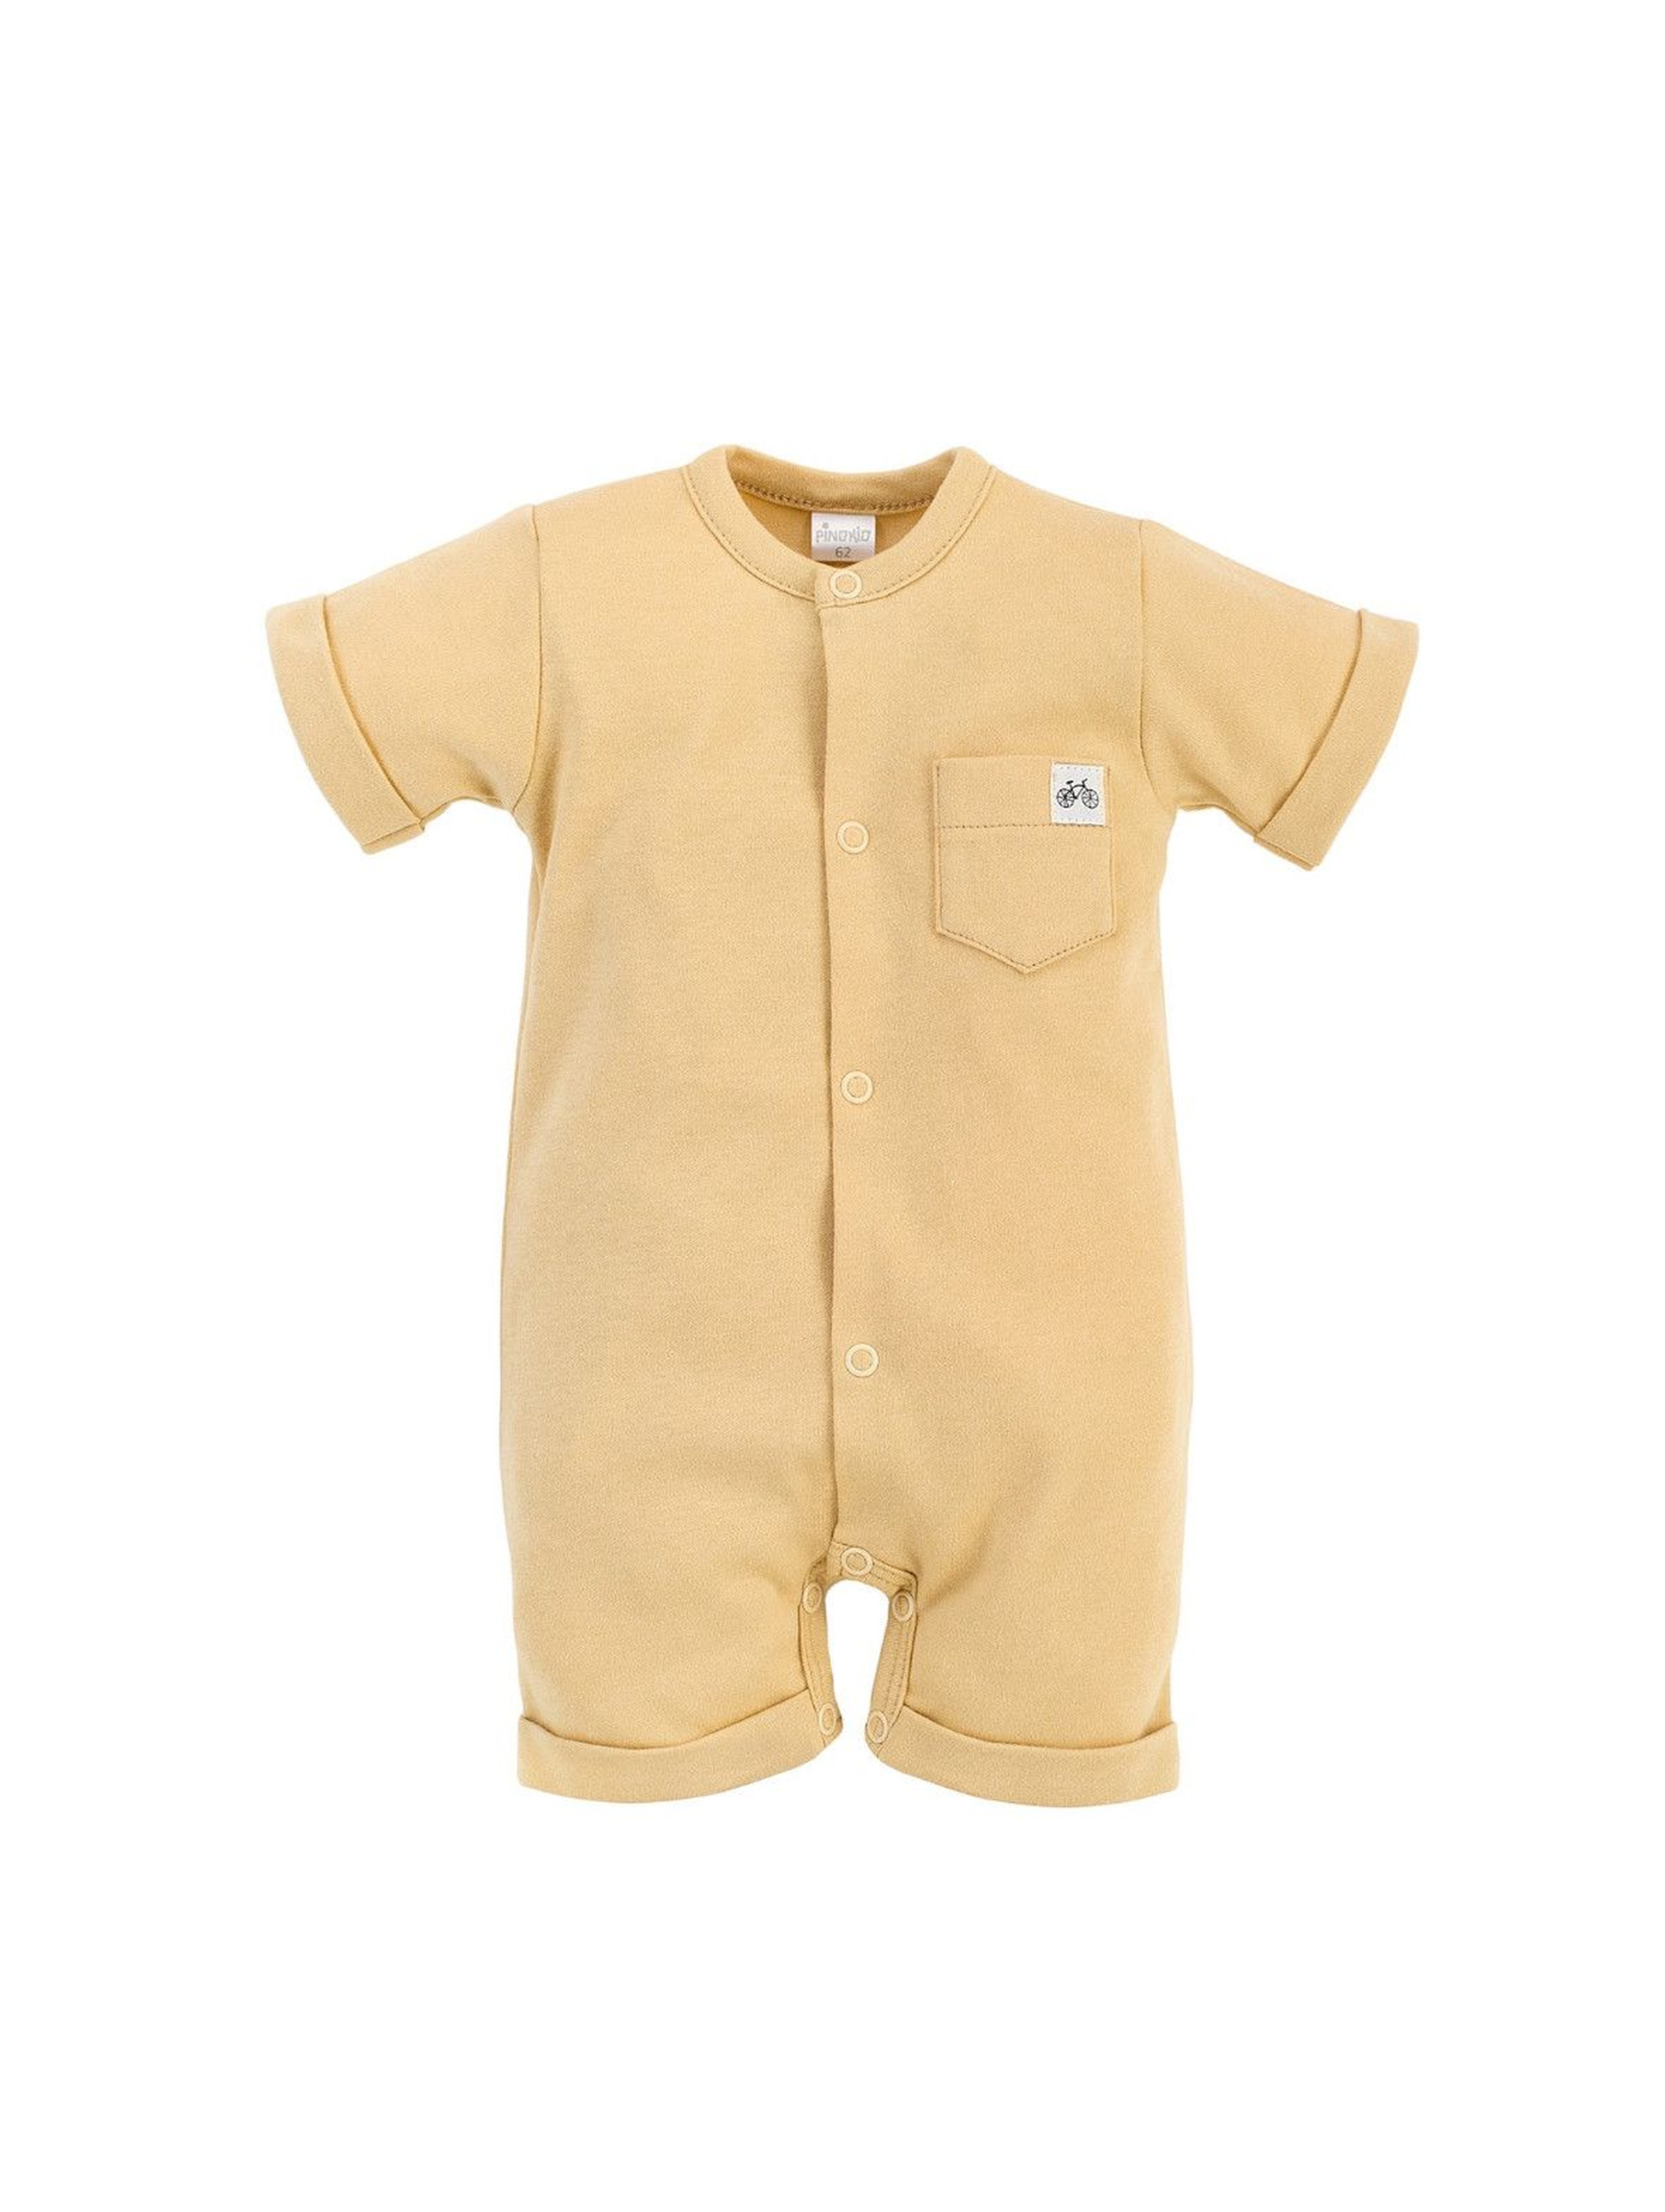 Bawełniany rampers niemowlęcy - żółty